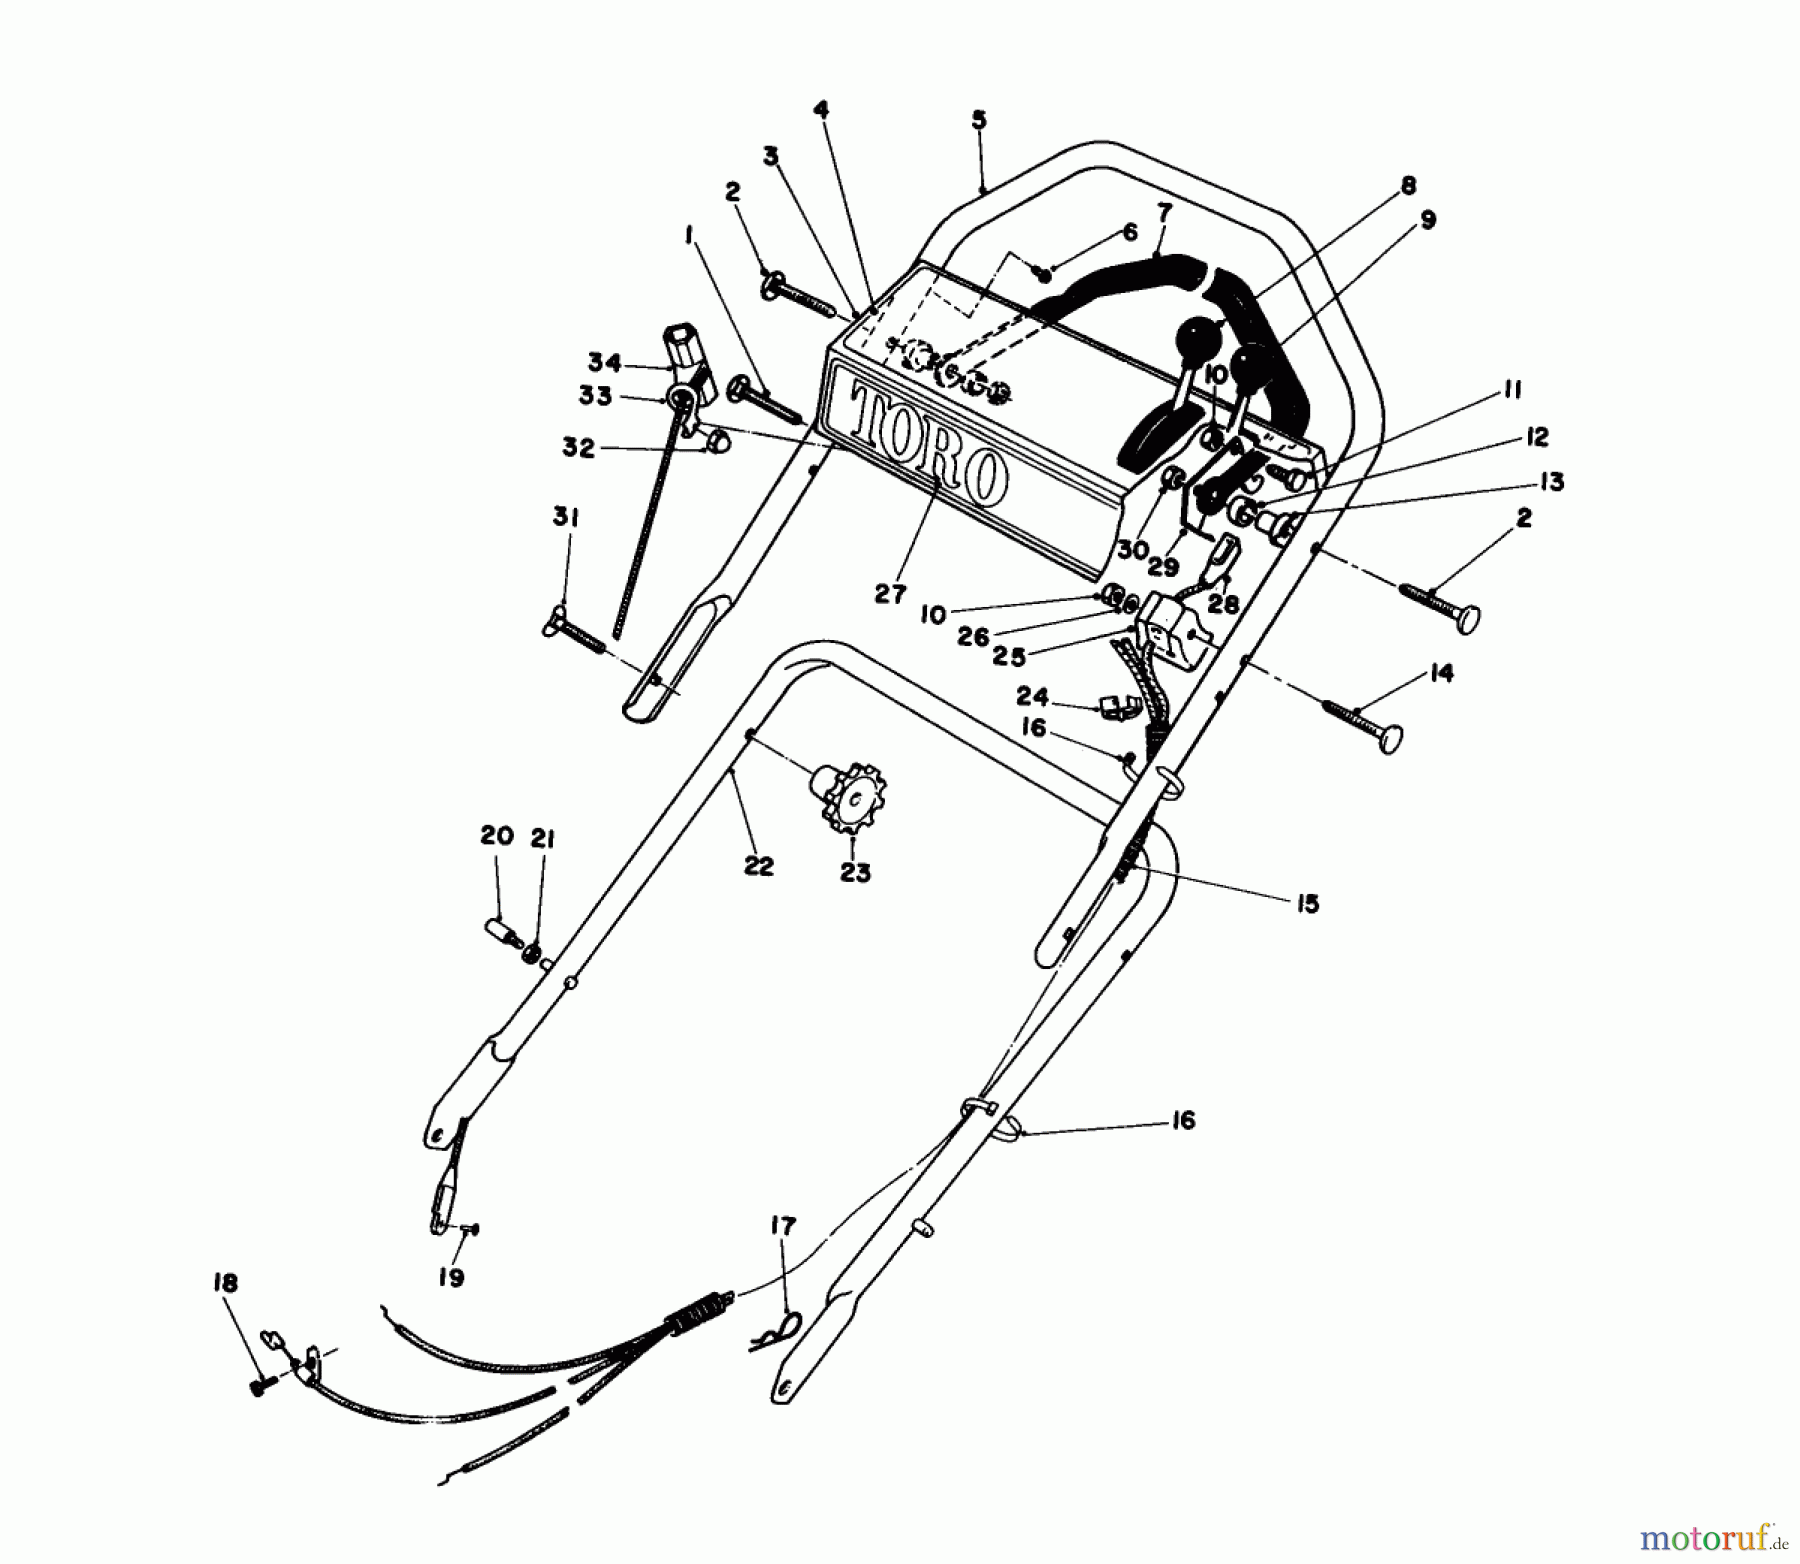  Toro Neu Mowers, Walk-Behind Seite 1 16771 - Toro Lawnmower, 1984 (4000001-4999999) HANDLE ASSEMBLY